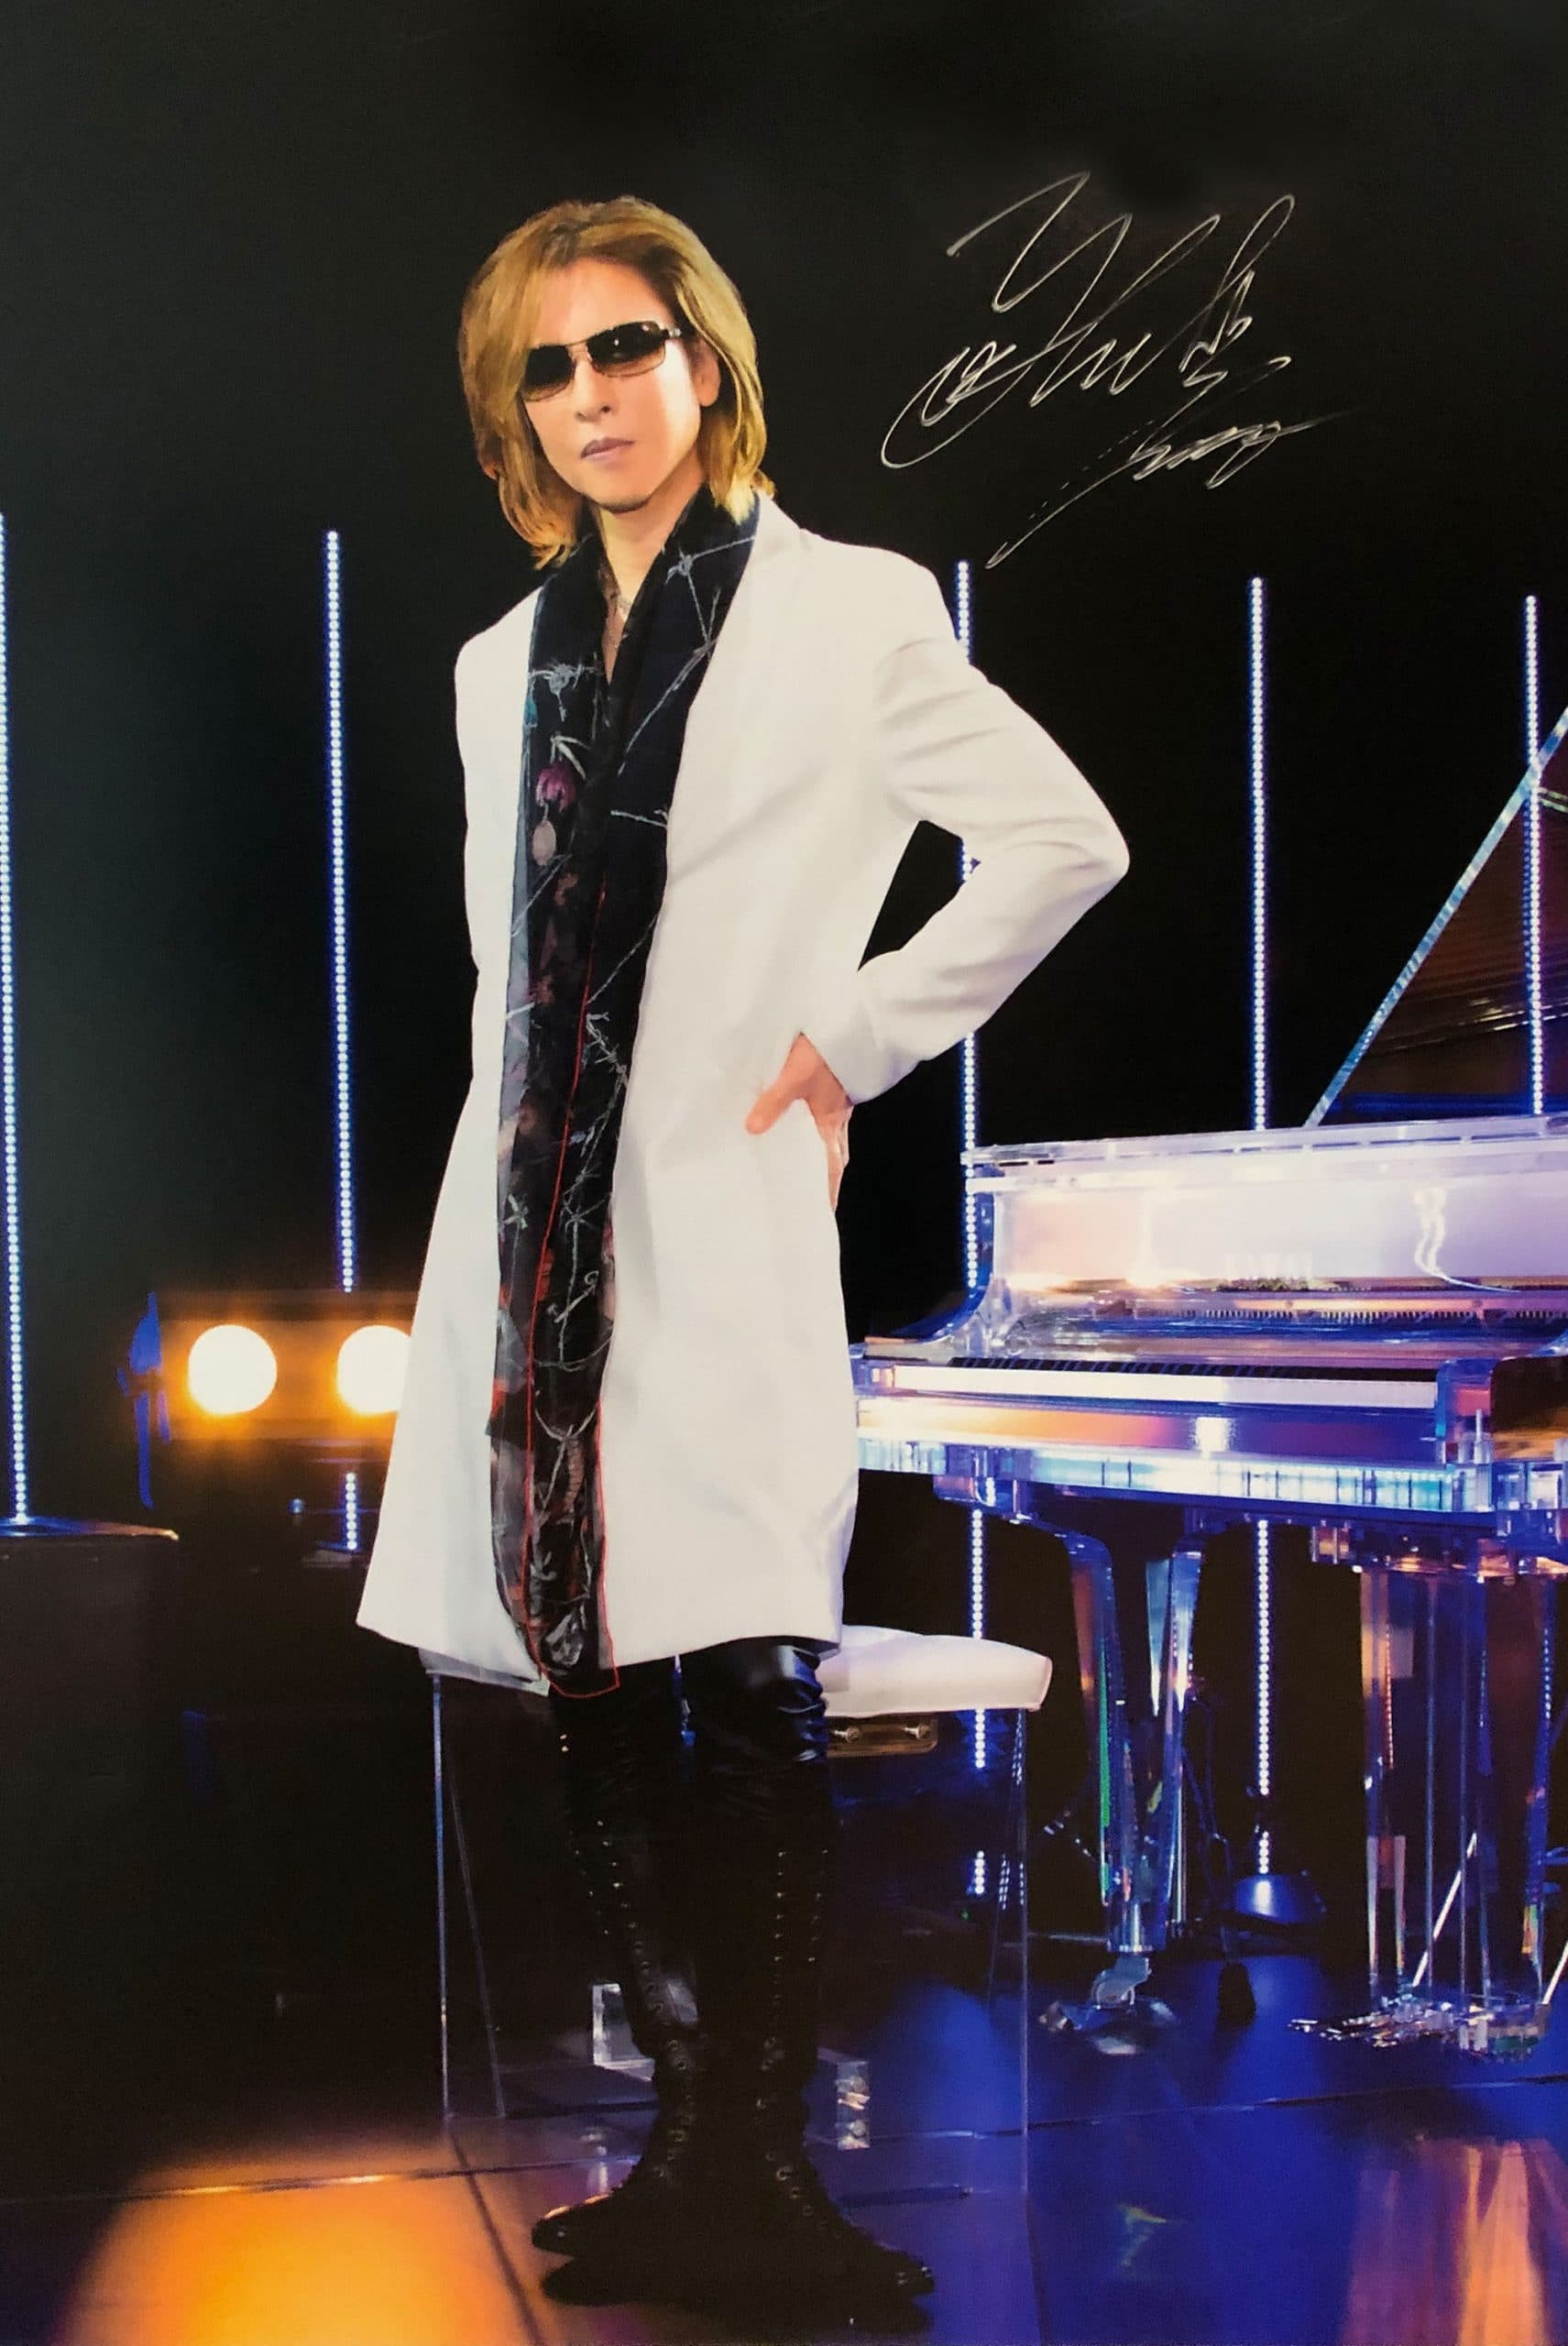 Yoshiki singer